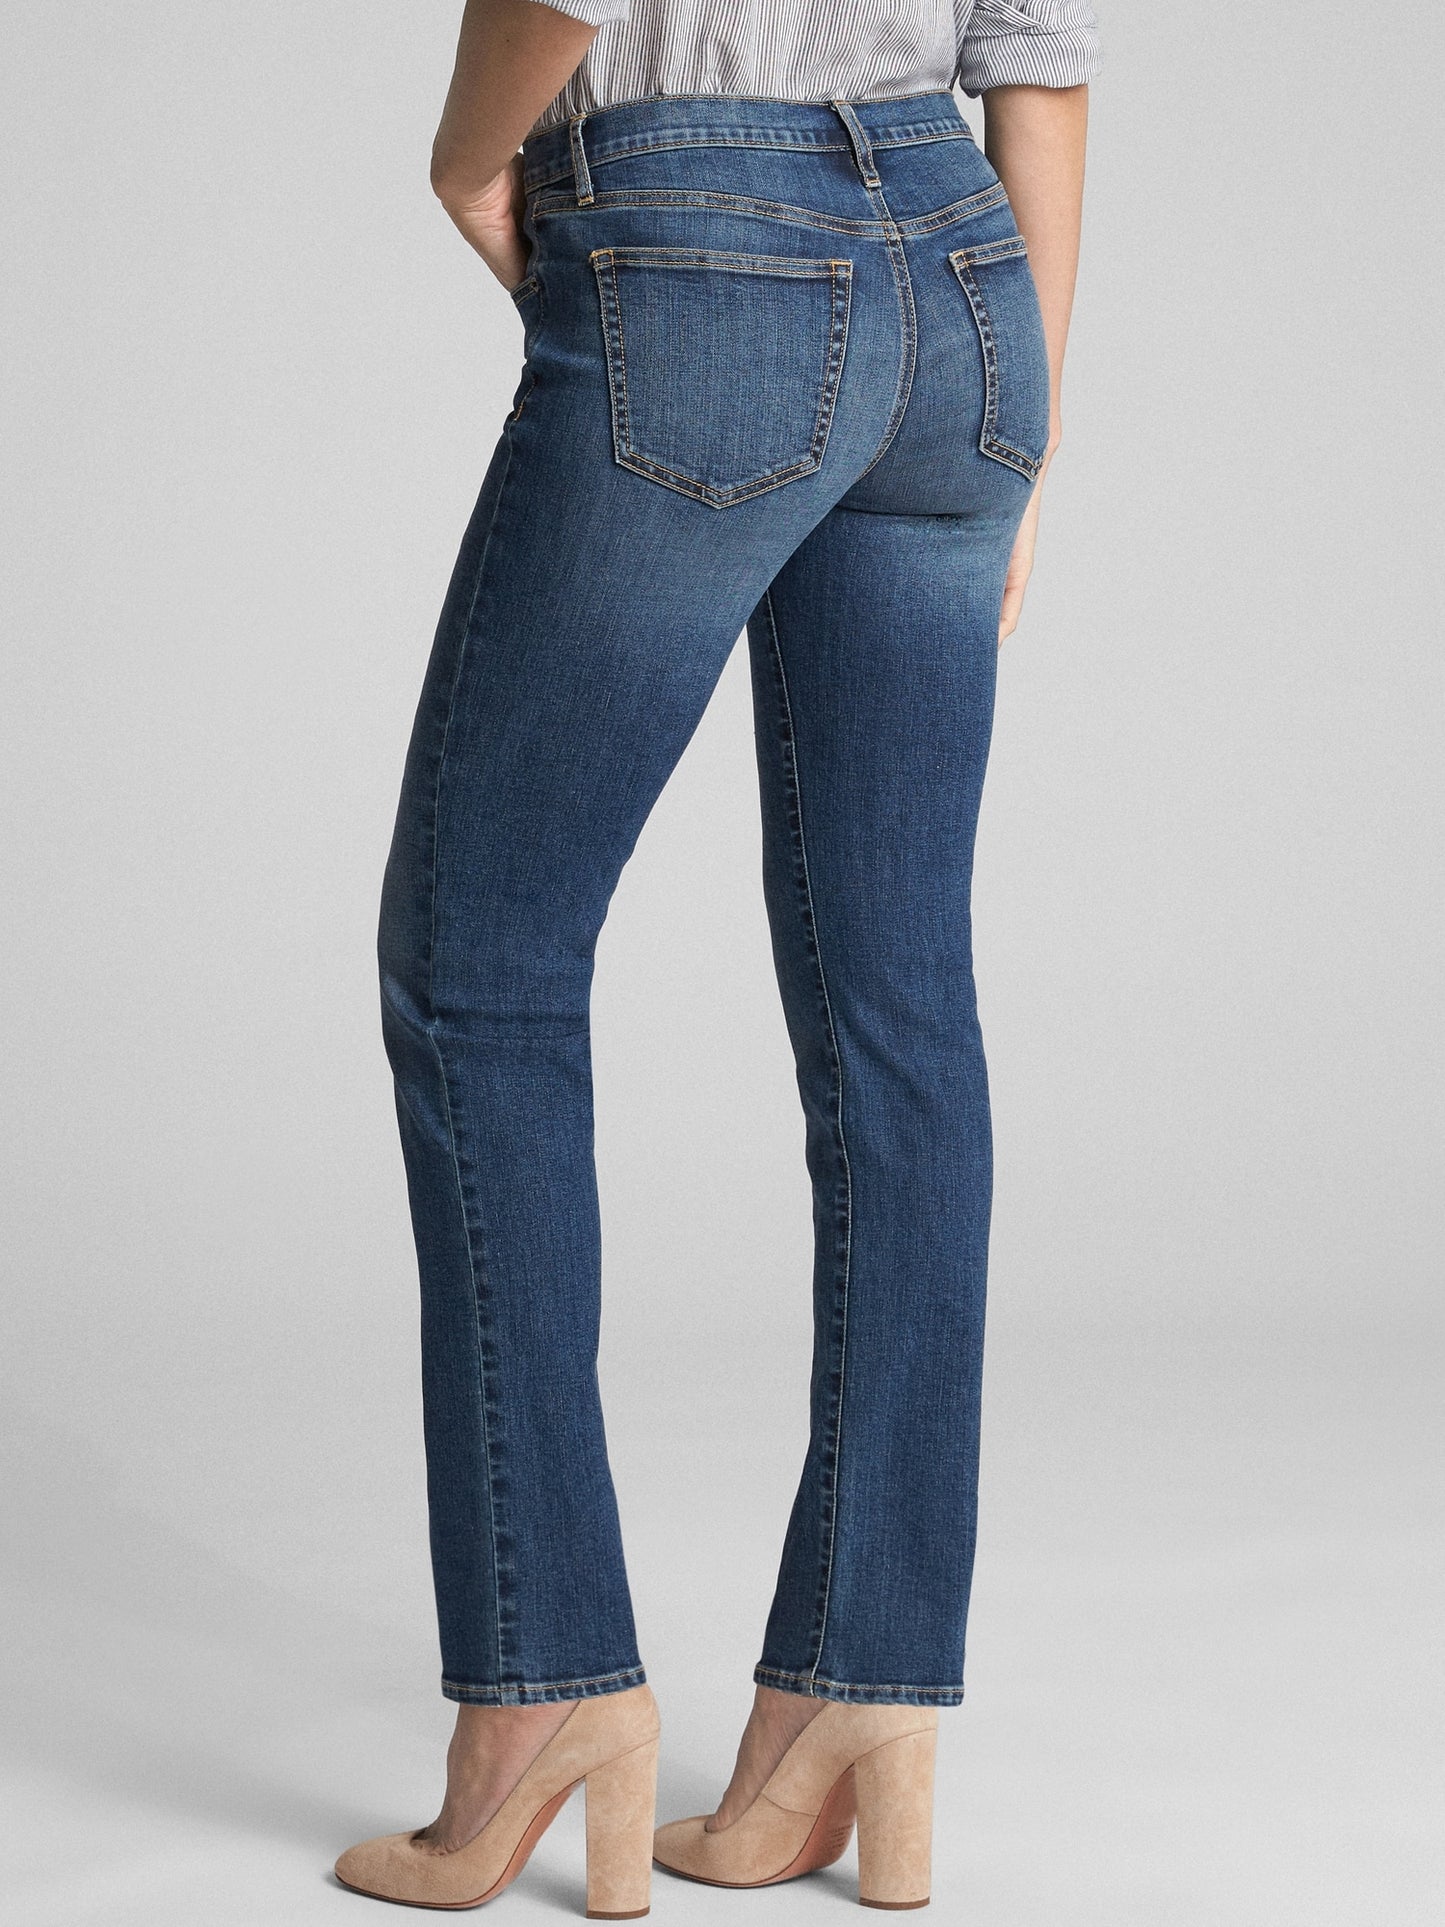 Gap Mid Rise Classic Straight Jeans - Medium Indigo